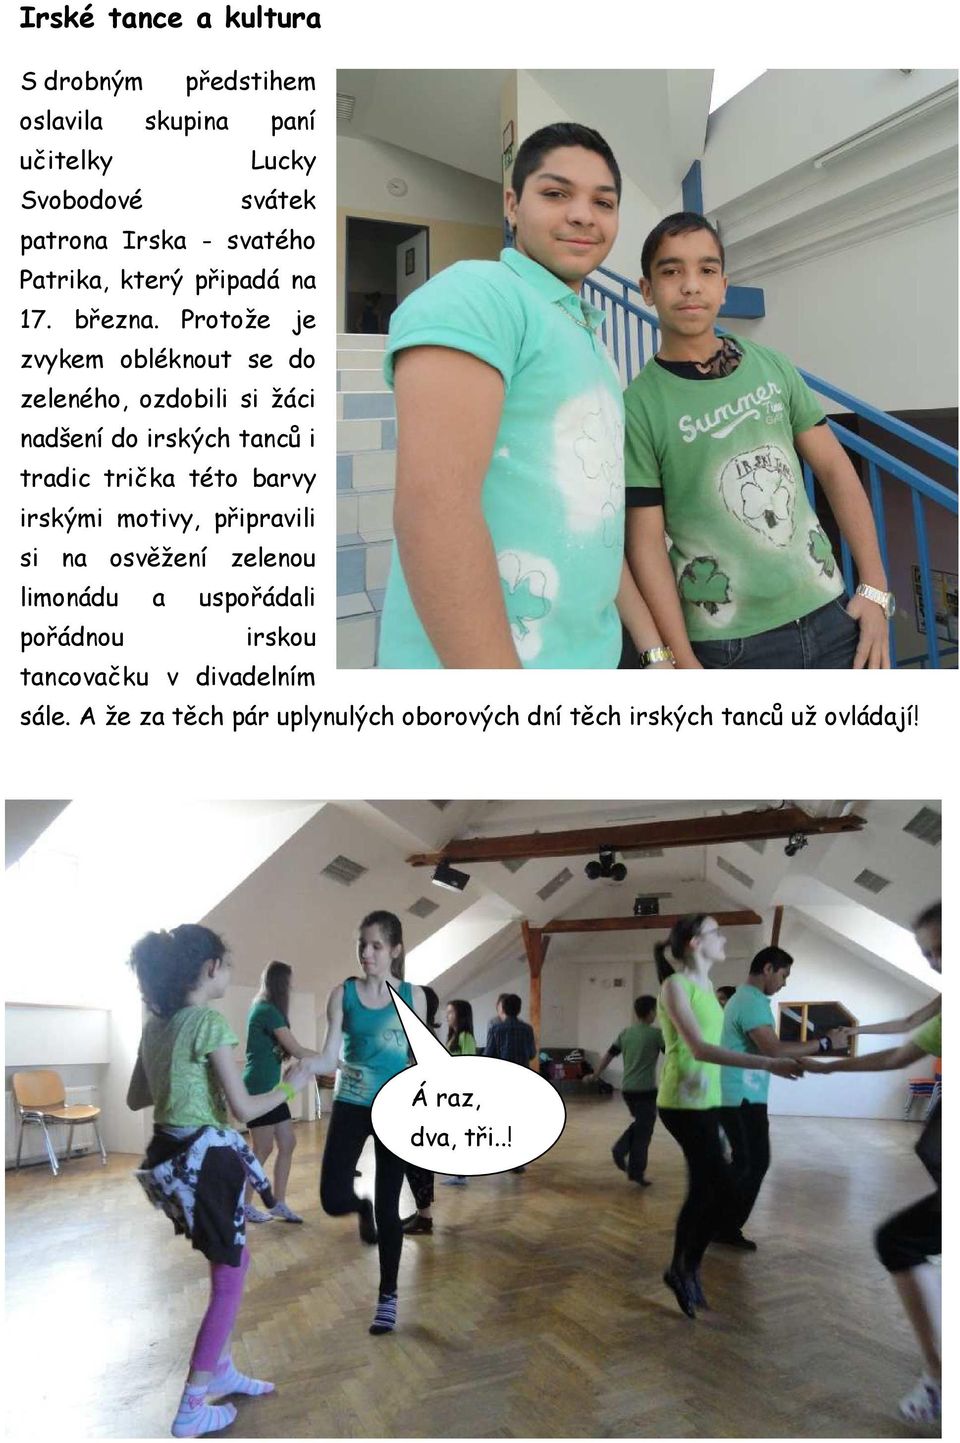 Protože je zvykem obléknout se do zeleného, ozdobili si žáci nadšení do irských tanců i tradic trička této barvy irskými